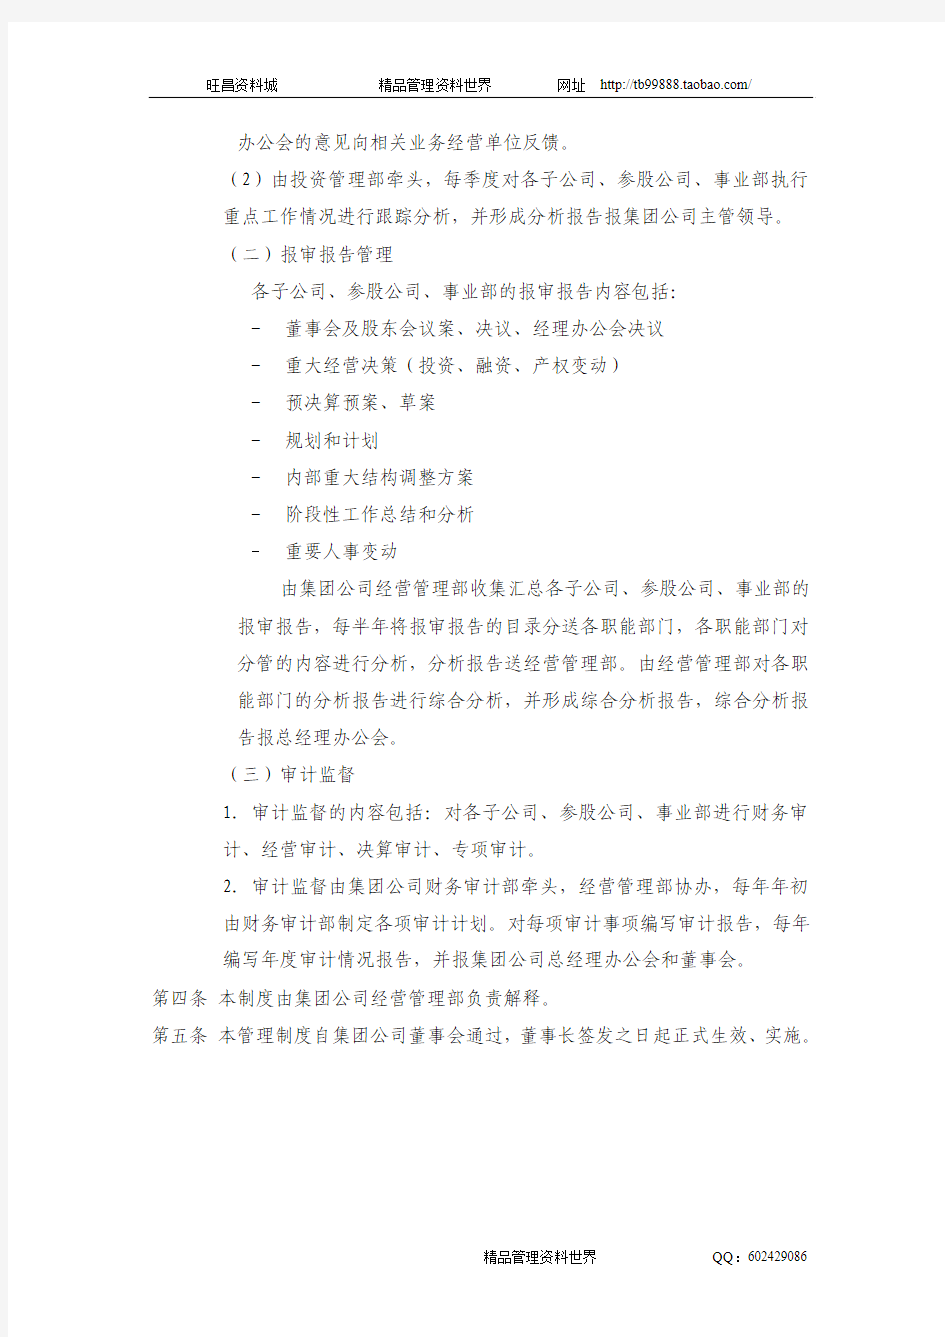 5黑龙江辰能集团公司运营监控管理制度